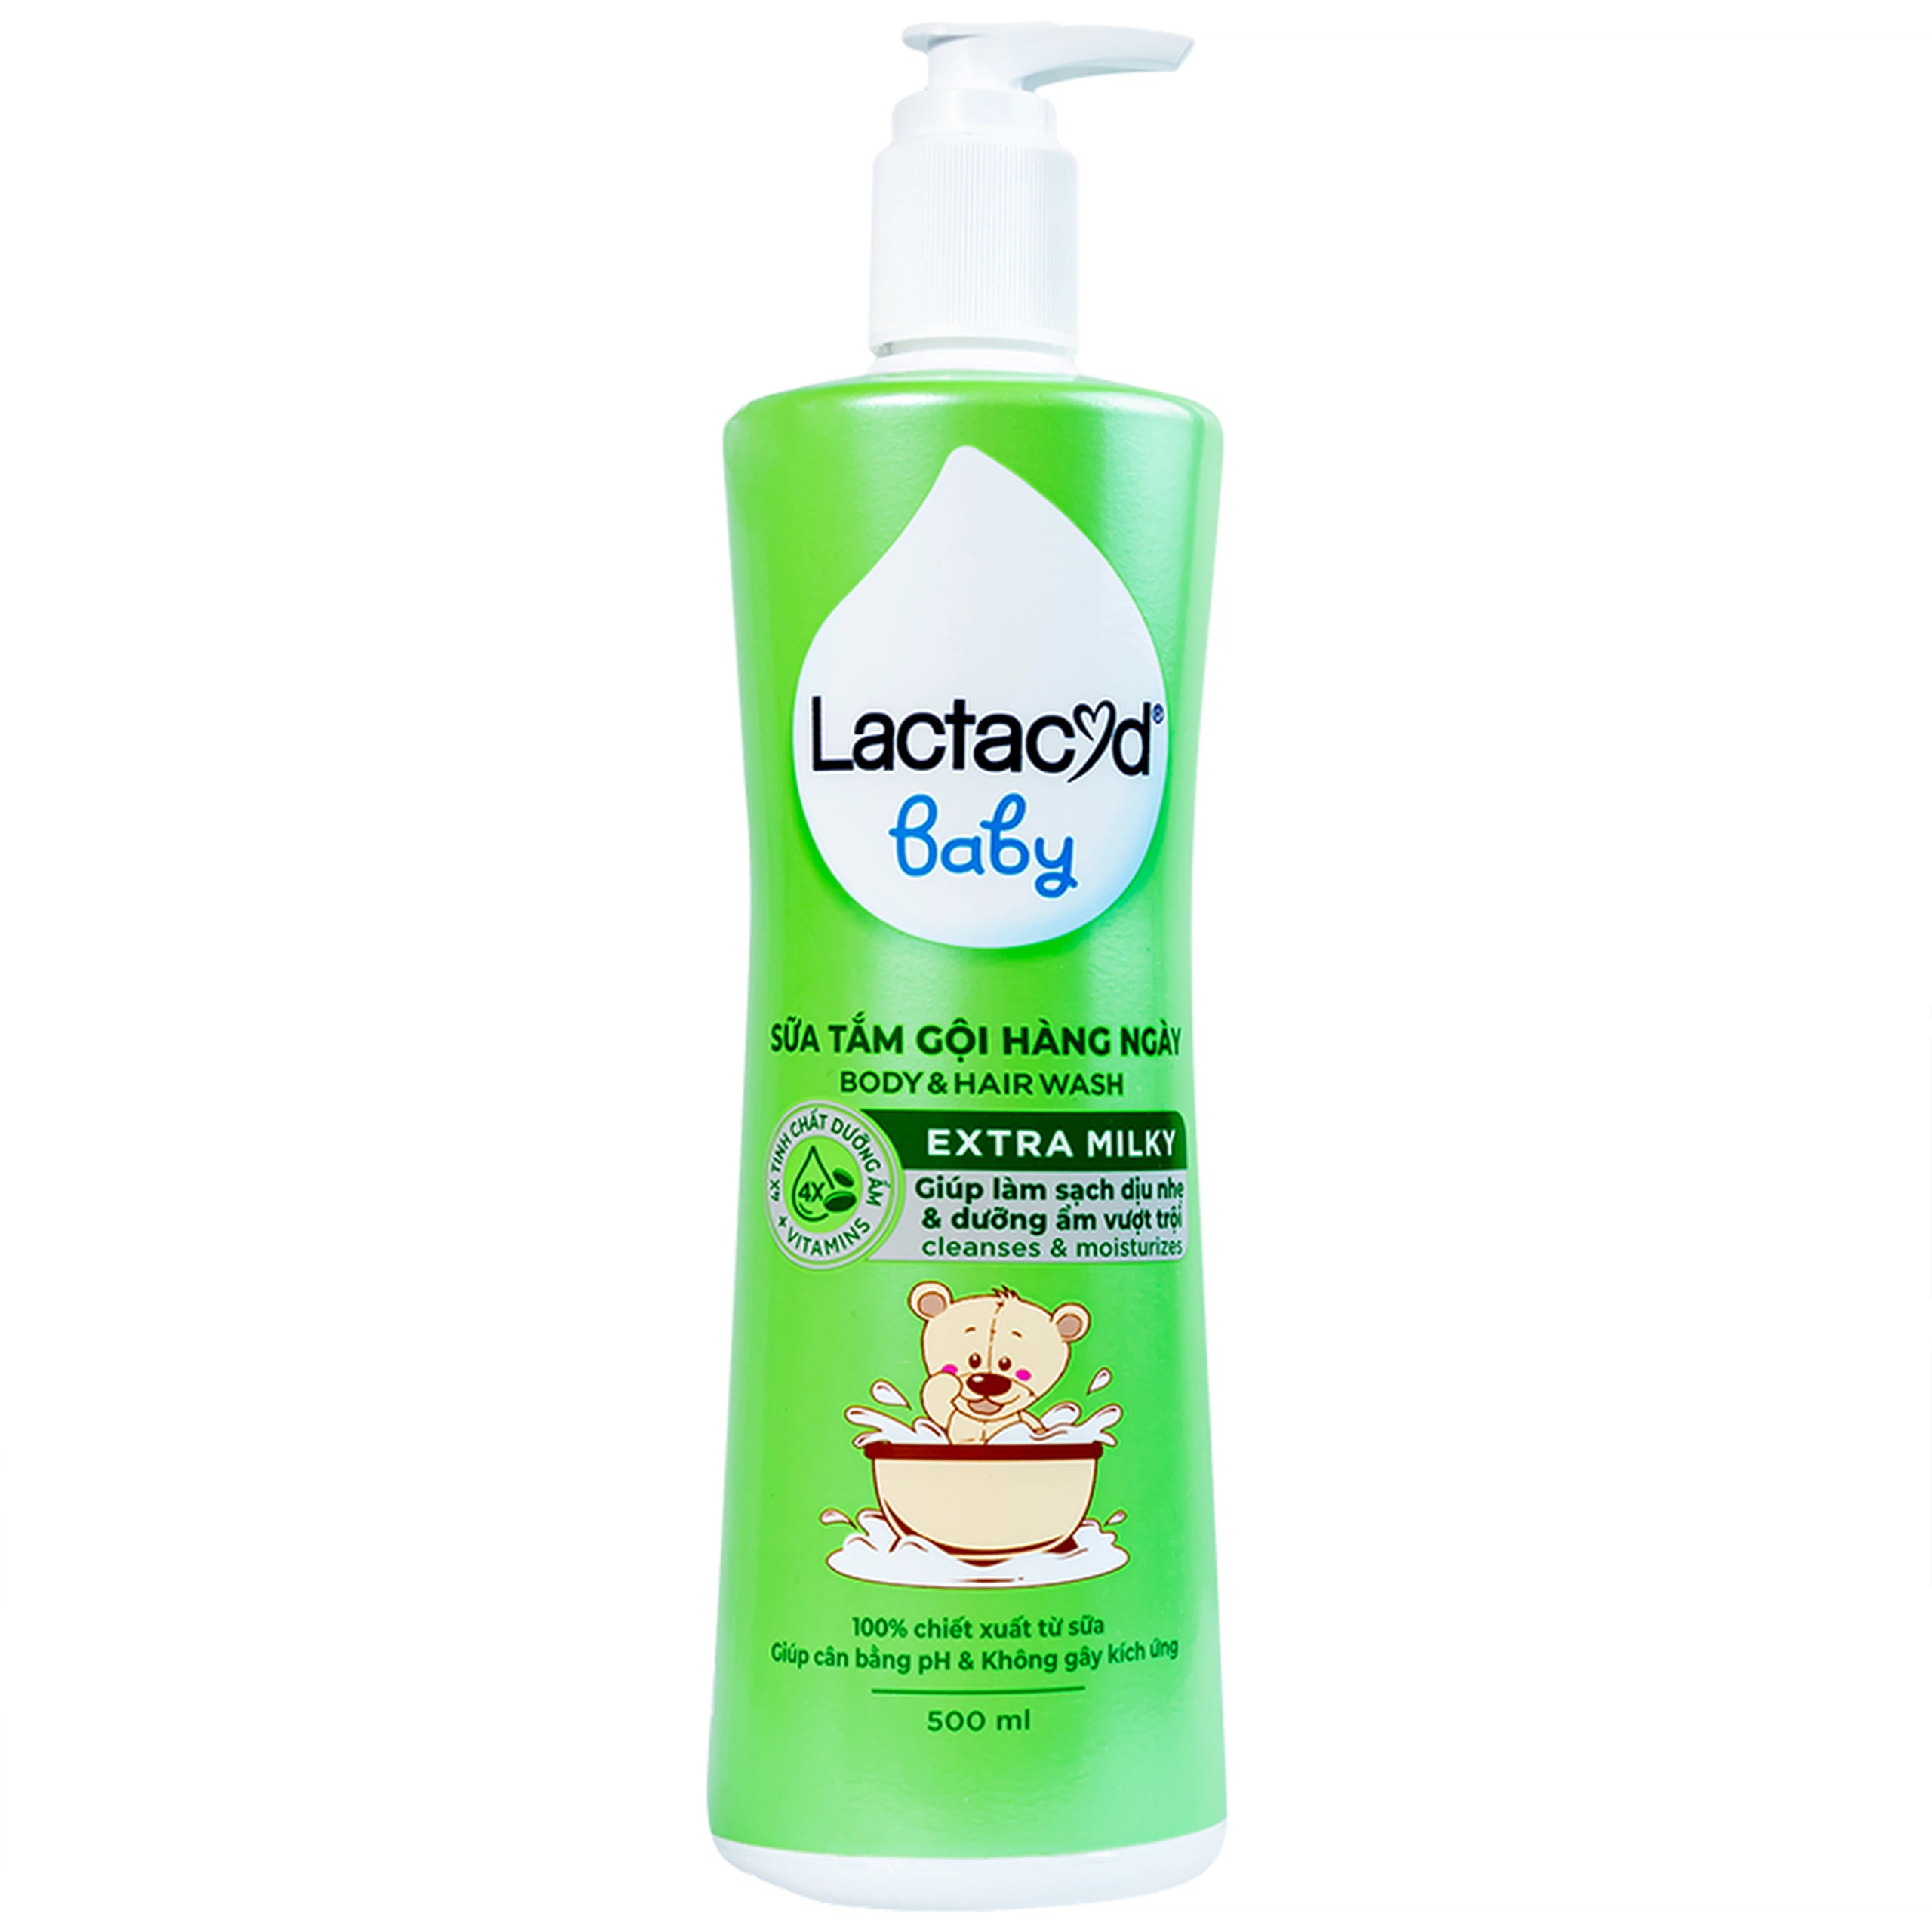 Sữa tắm gội hàng ngày Body And Hair Wash Lactacyd Baby Extra Milky sạch dịu nhẹ, dưỡng ẩm vượt trội (500ml)